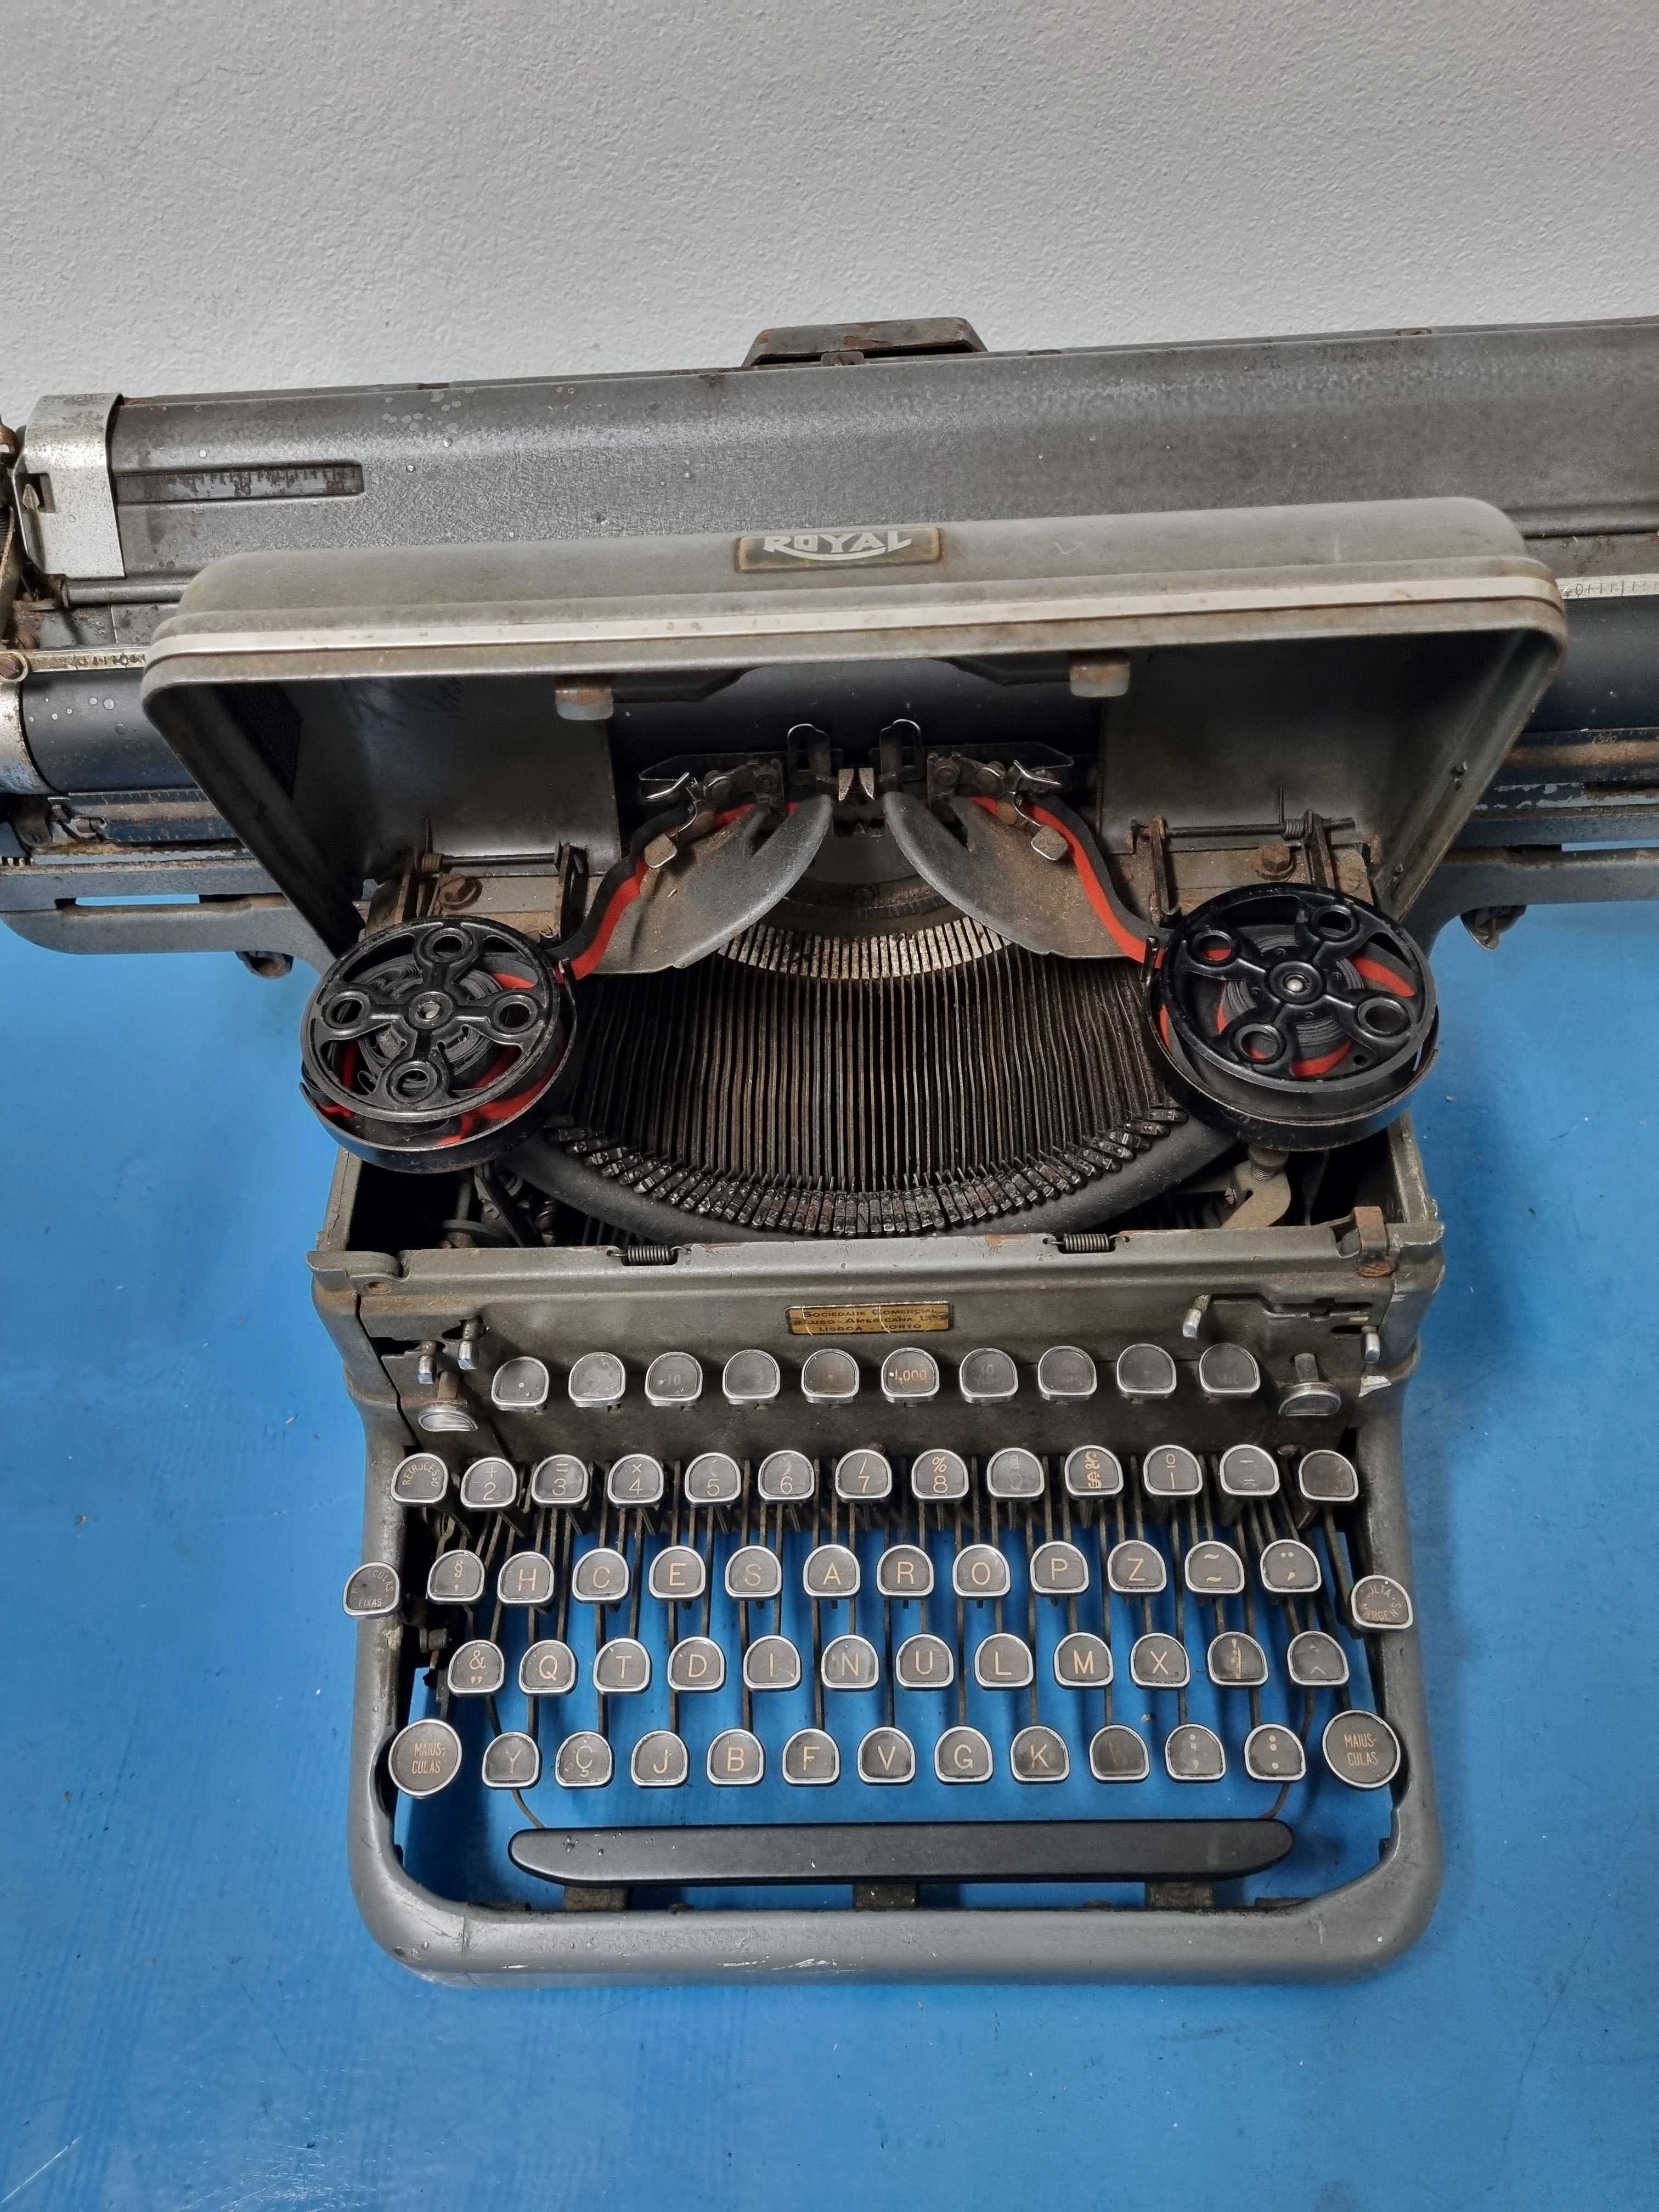 Maquina escrever ROYAL antiga